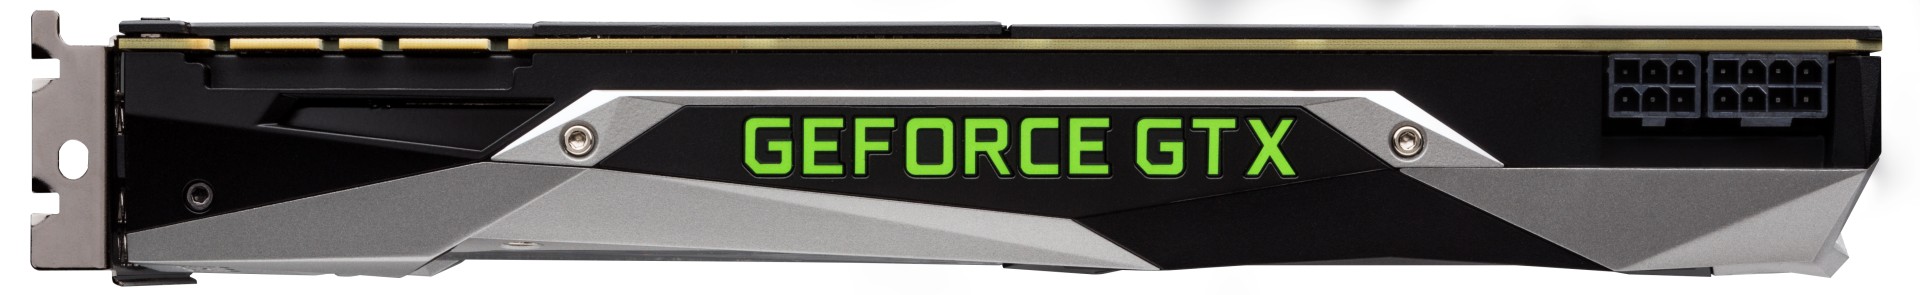 GeForce GTX 1080ti Top 1488314075